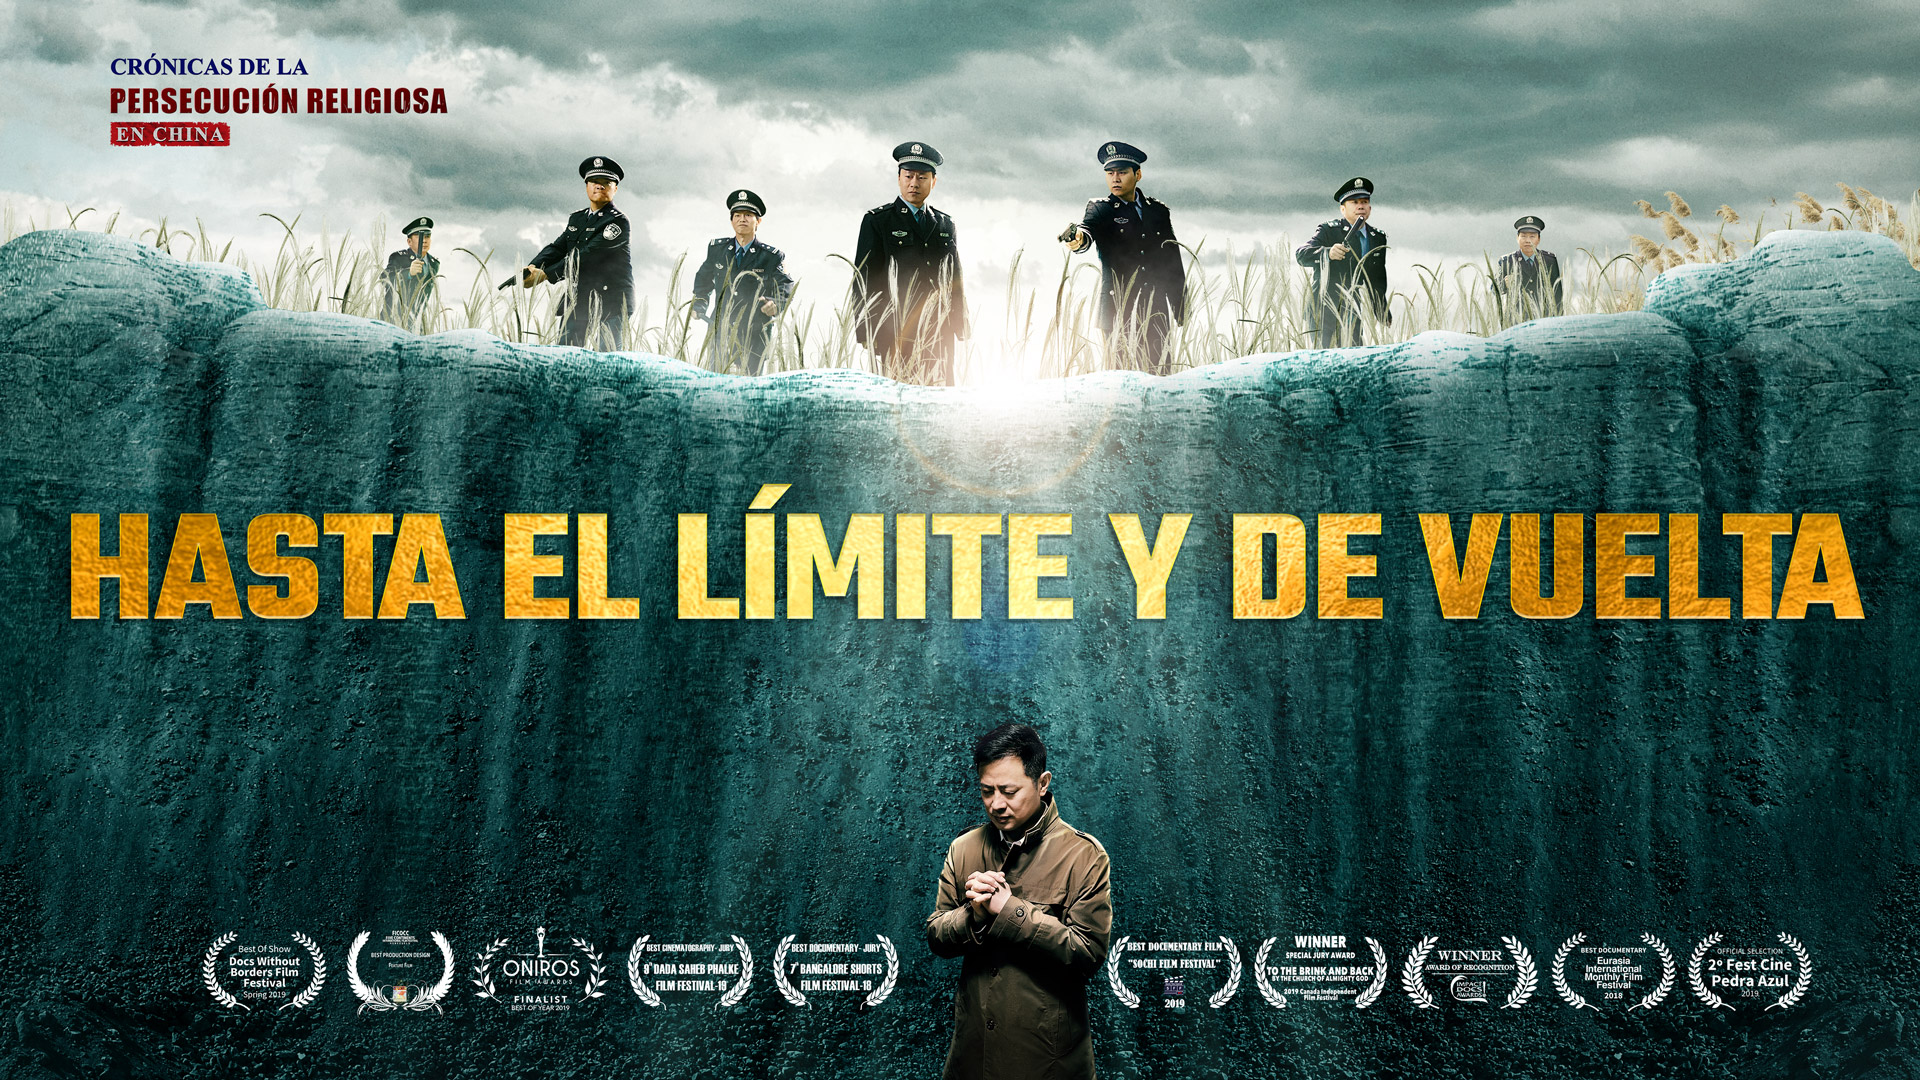 Fotografía promocional de Hasta el límite y de vuelta, un documental producido por la Iglesia de Dios Todopoderoso.